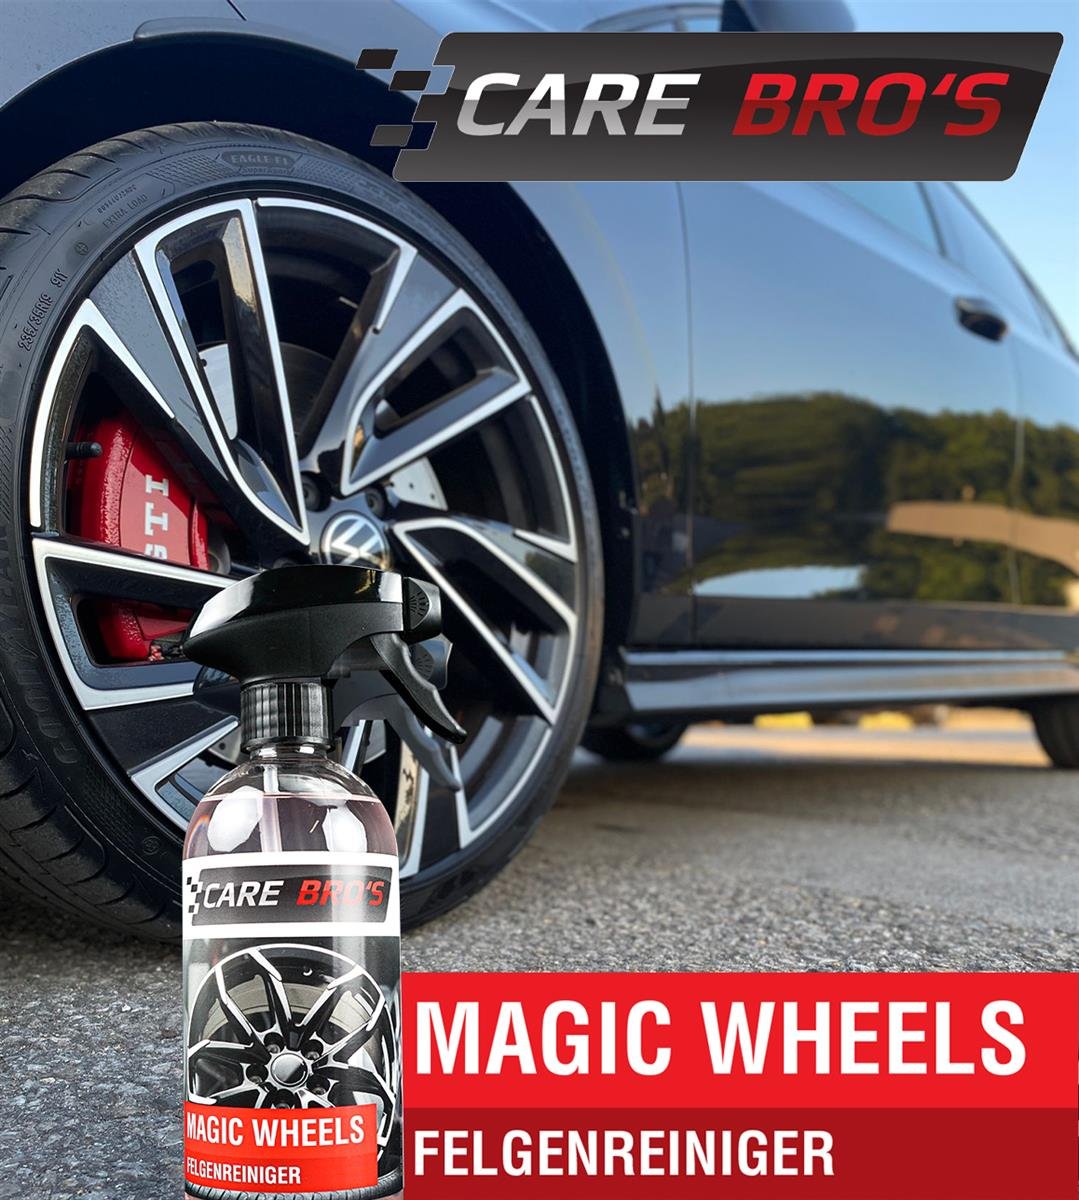 Magic-Wheels-Felgenreiniger-Care-Bro-s